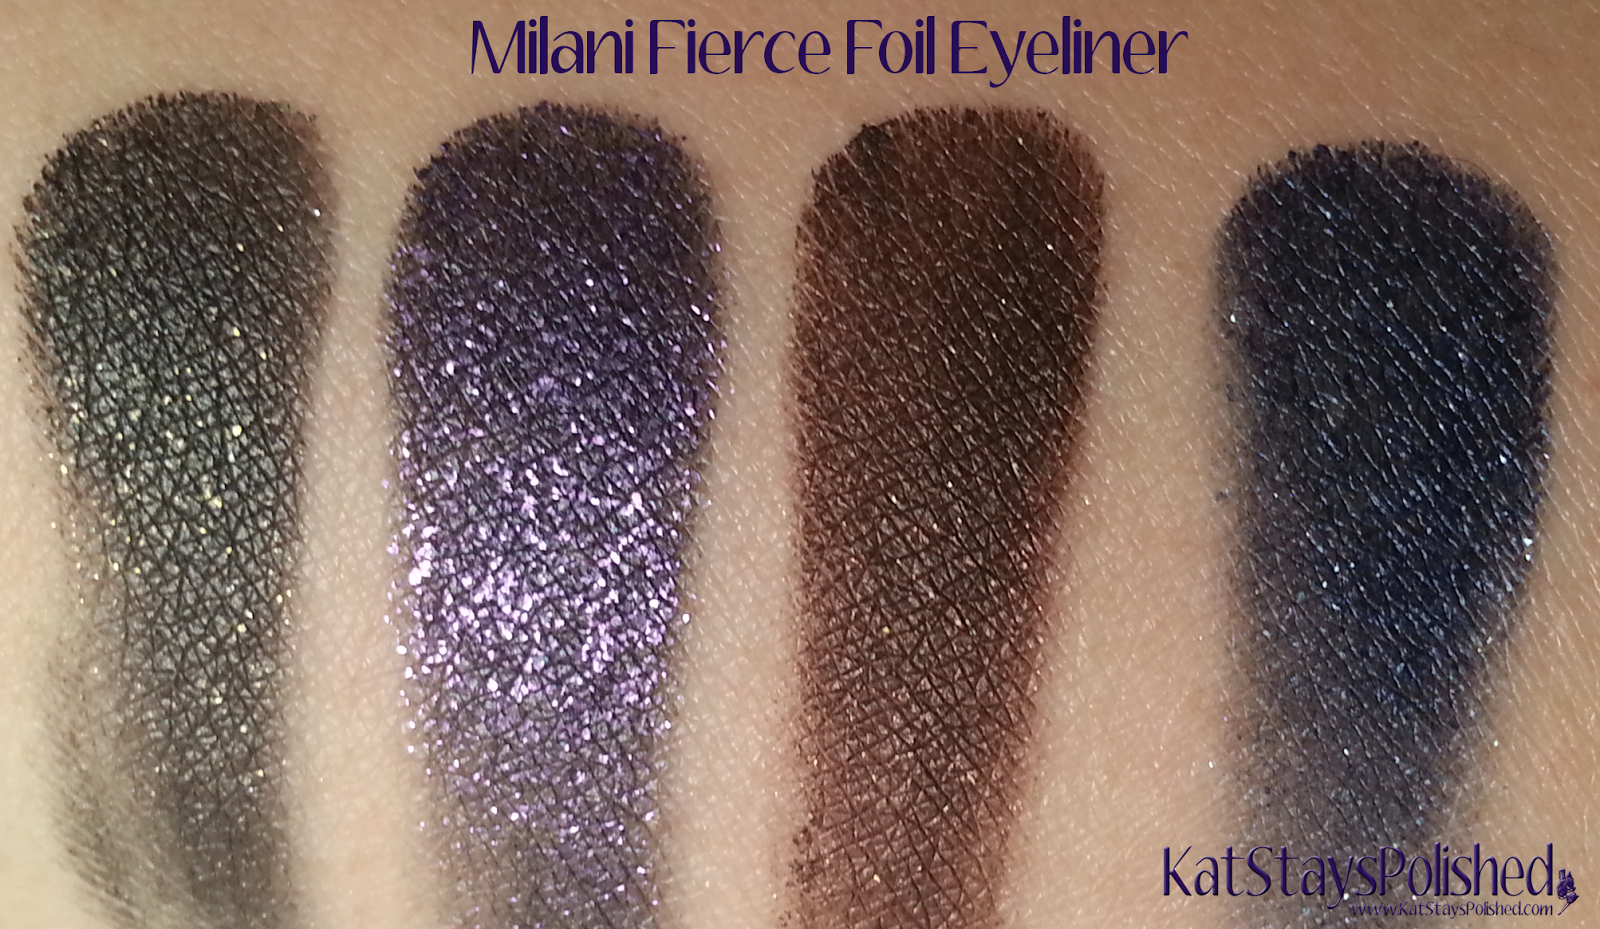 Milani Fierce Foil Eyeliner | Kat Stays Polished